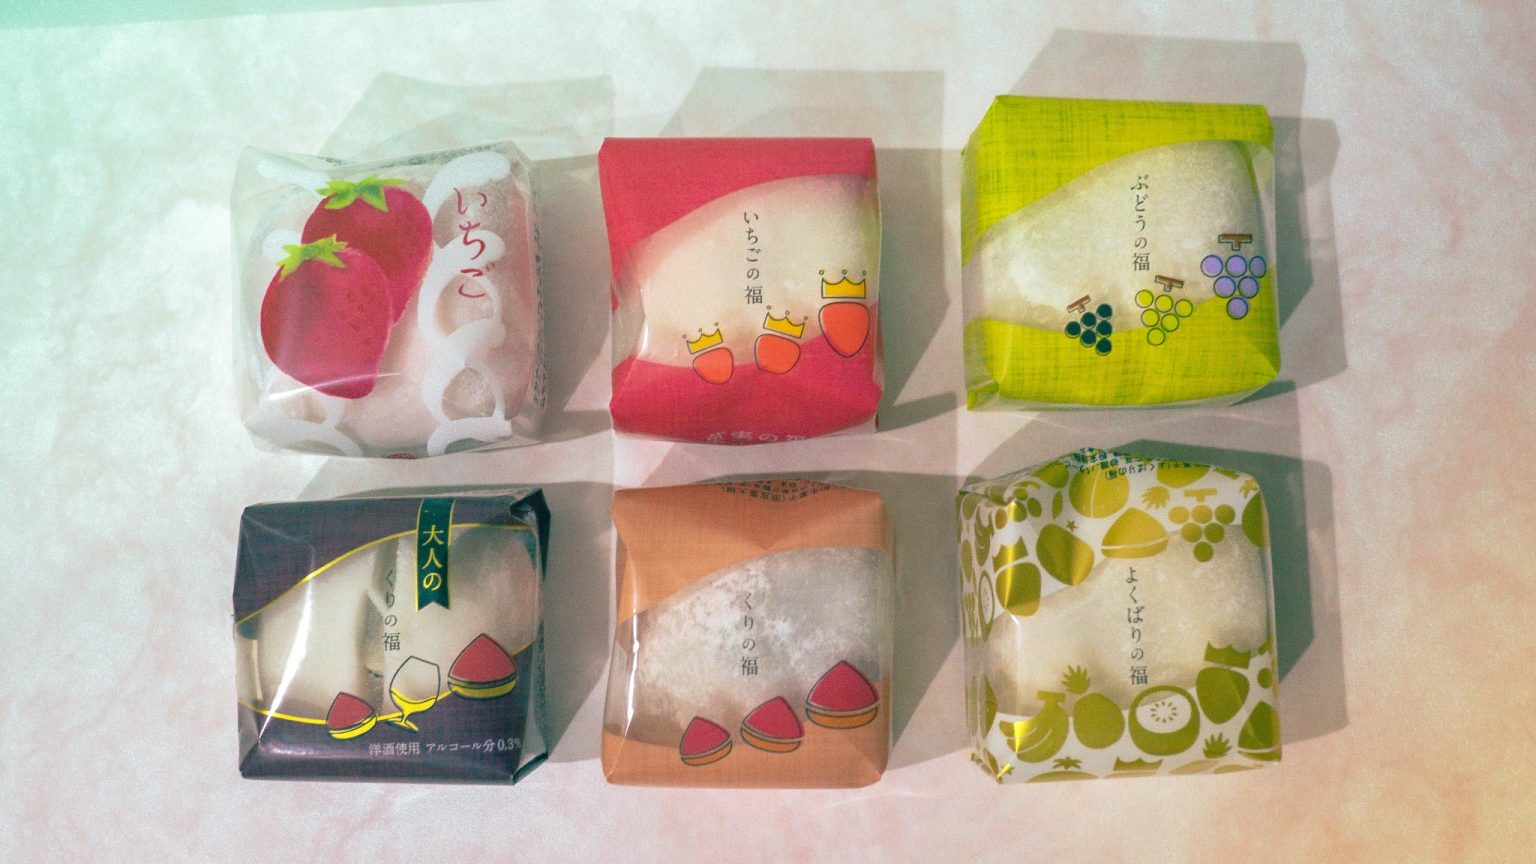 「お試しセット 菓実の福6個入」2,980円。（送料込み）
※時期によって中身のフルーツの種類・品種が変わります。